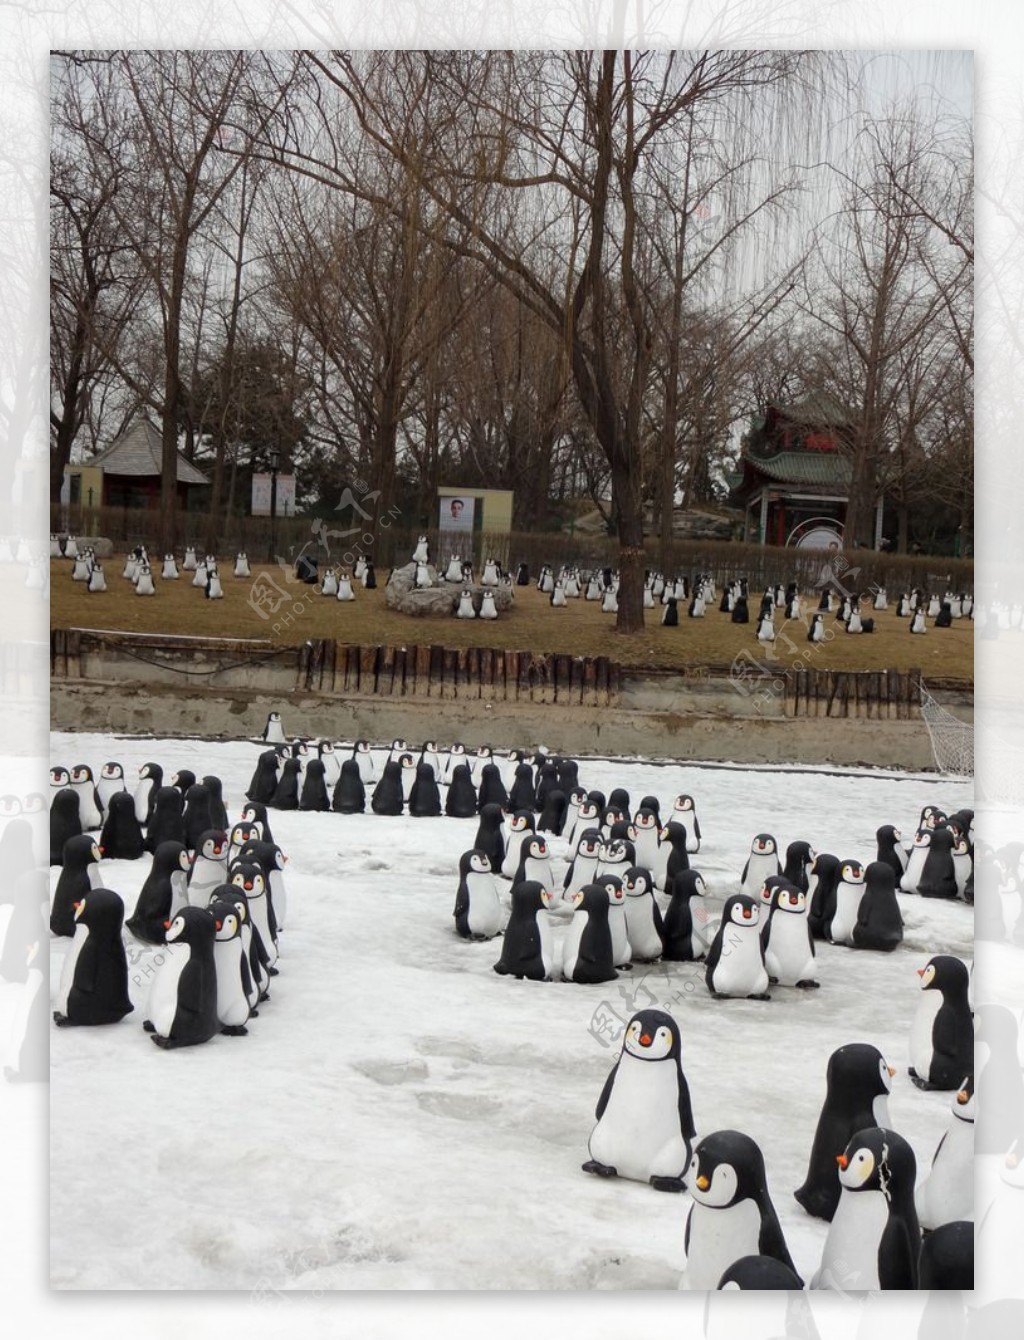 雪地上的企鹅群